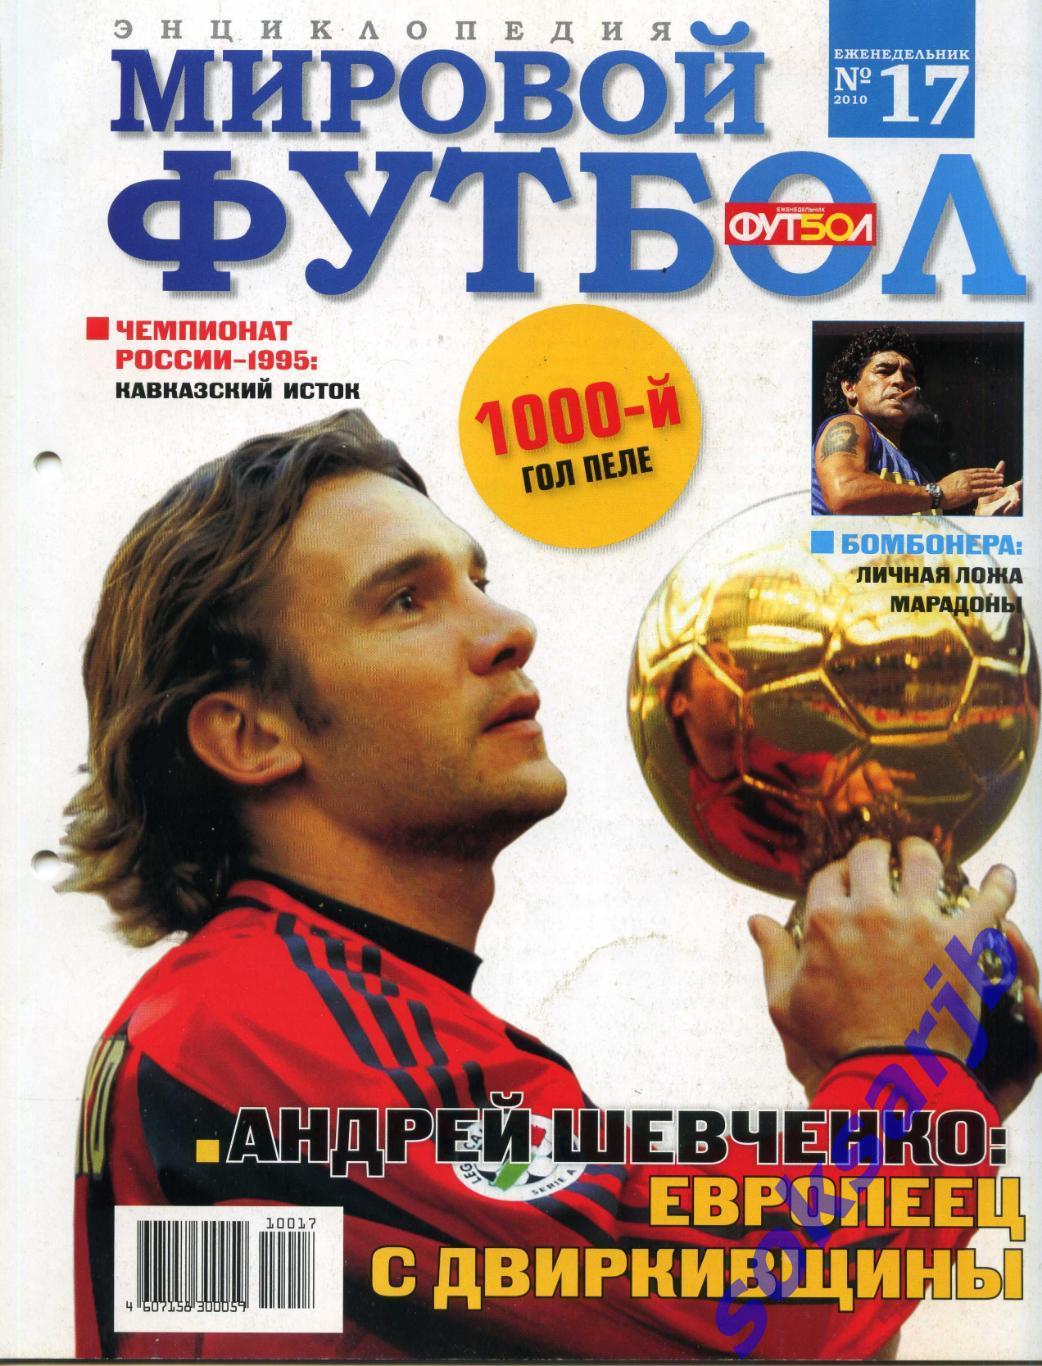 2010. Мировой футбол. Энциклопедия. № 17.